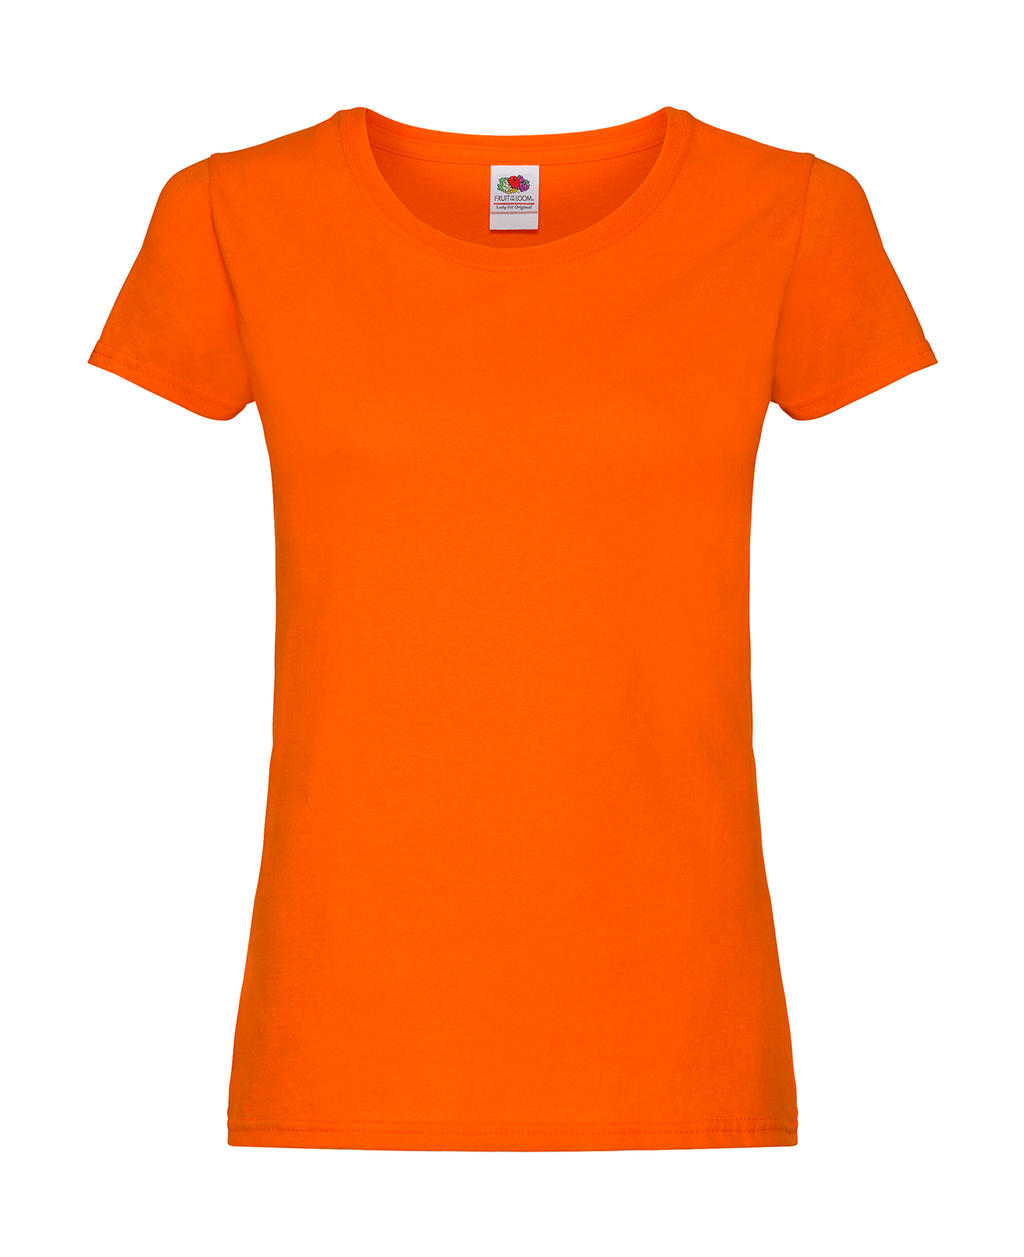  Ladies Original T in Farbe Orange